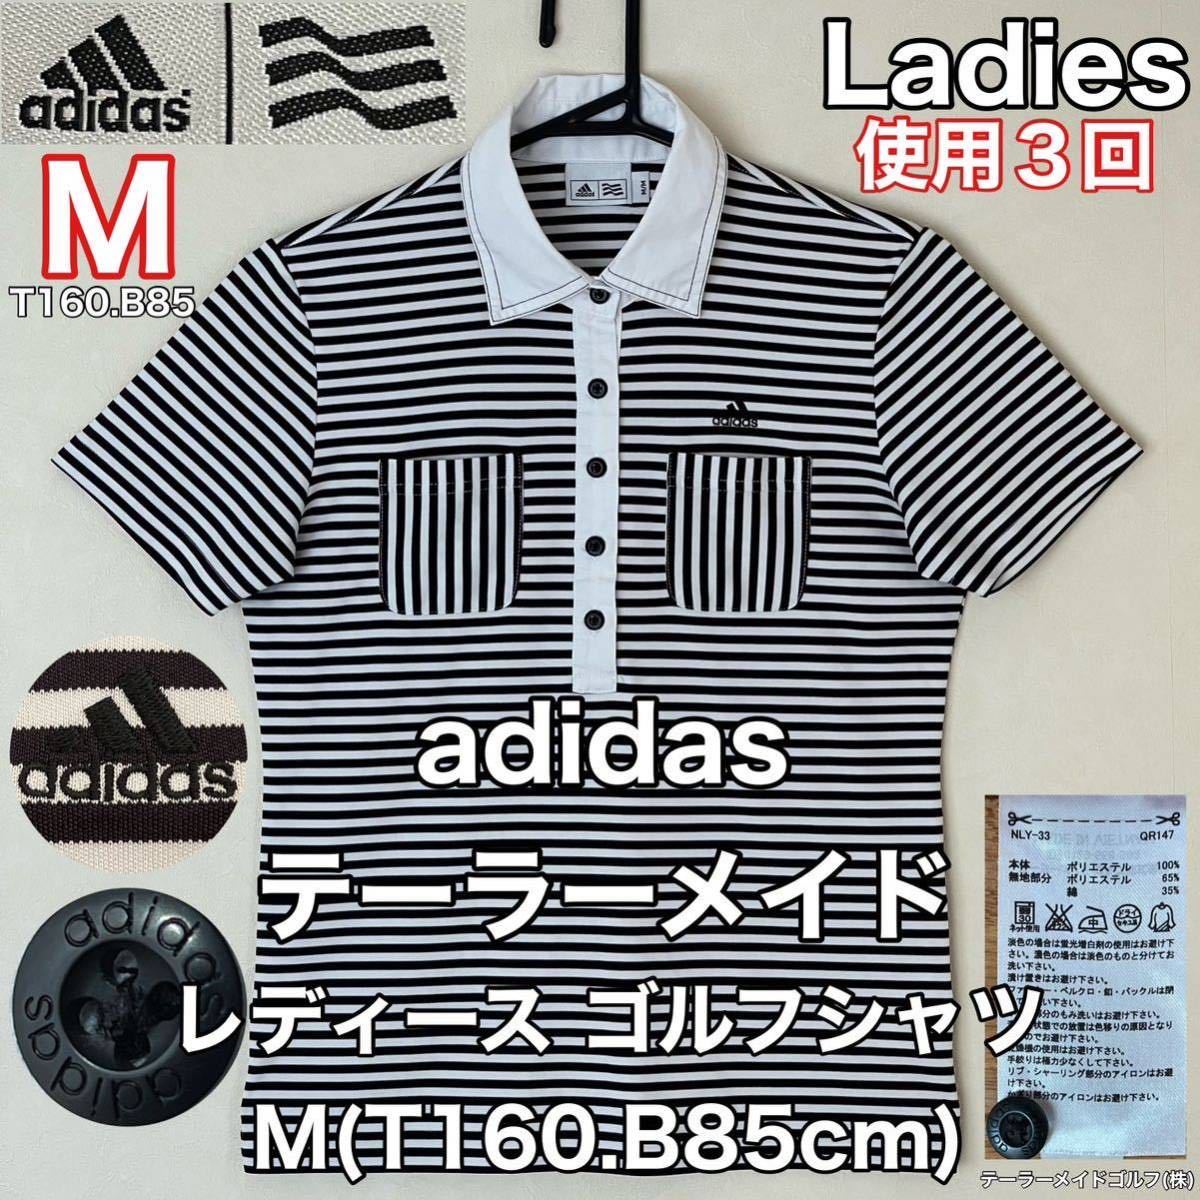 adidas(アディダス)テーラーメイド レディース ゴルフ シャツ M(T160.B85cm)使用3回 ブラック ホワイト 半袖 ドライ スポーツ アウトドア